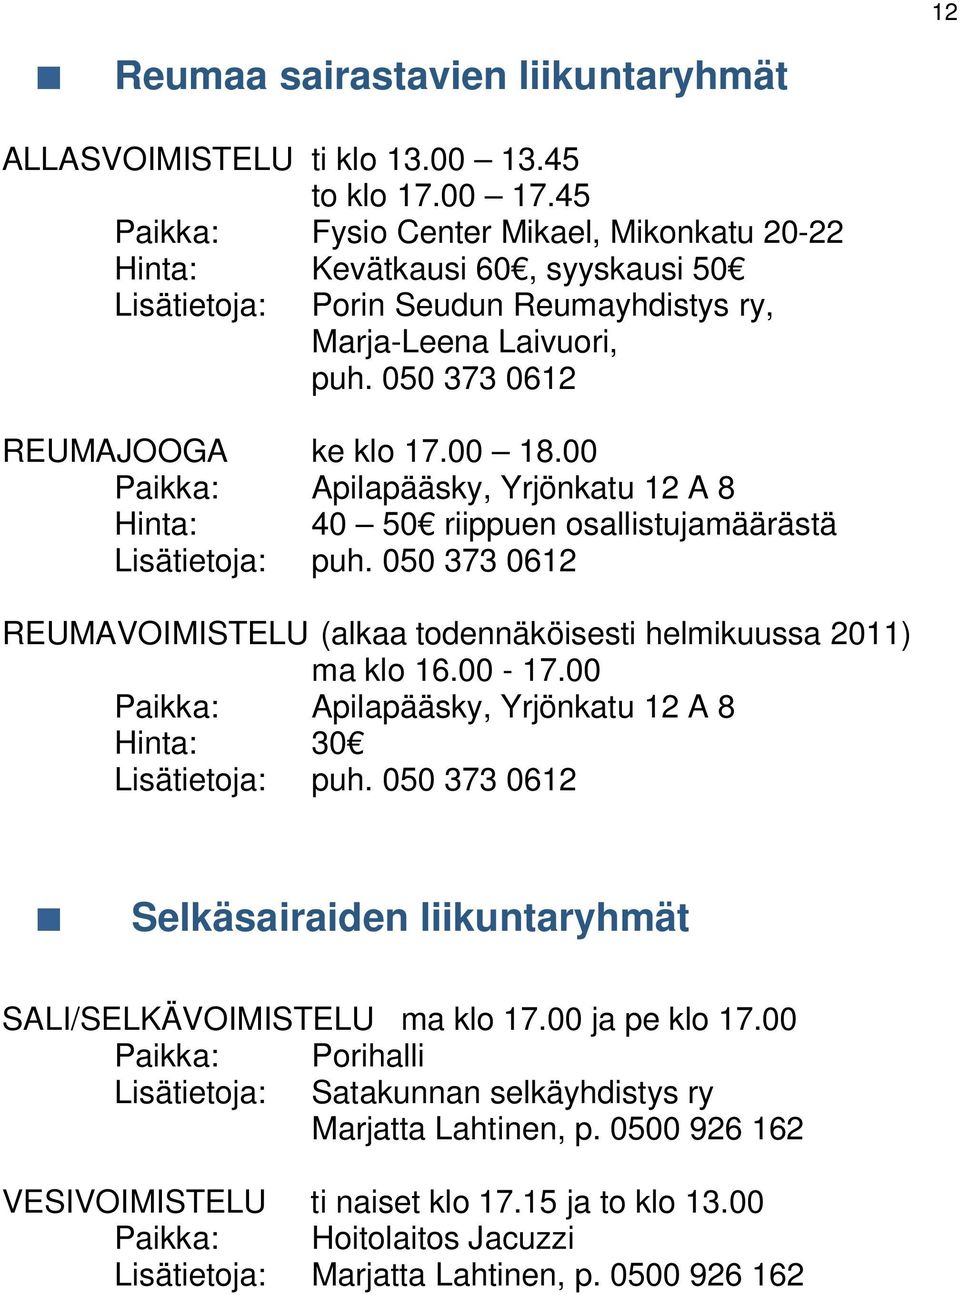 00 Paikka: Apilapääsky, Yrjönkatu 12 A 8 Hinta: 40 50 riippuen osallistujamäärästä Lisätietoja: puh. 050 373 0612 REUMAVOIMISTELU (alkaa todennäköisesti helmikuussa 2011) ma klo 16.00-17.